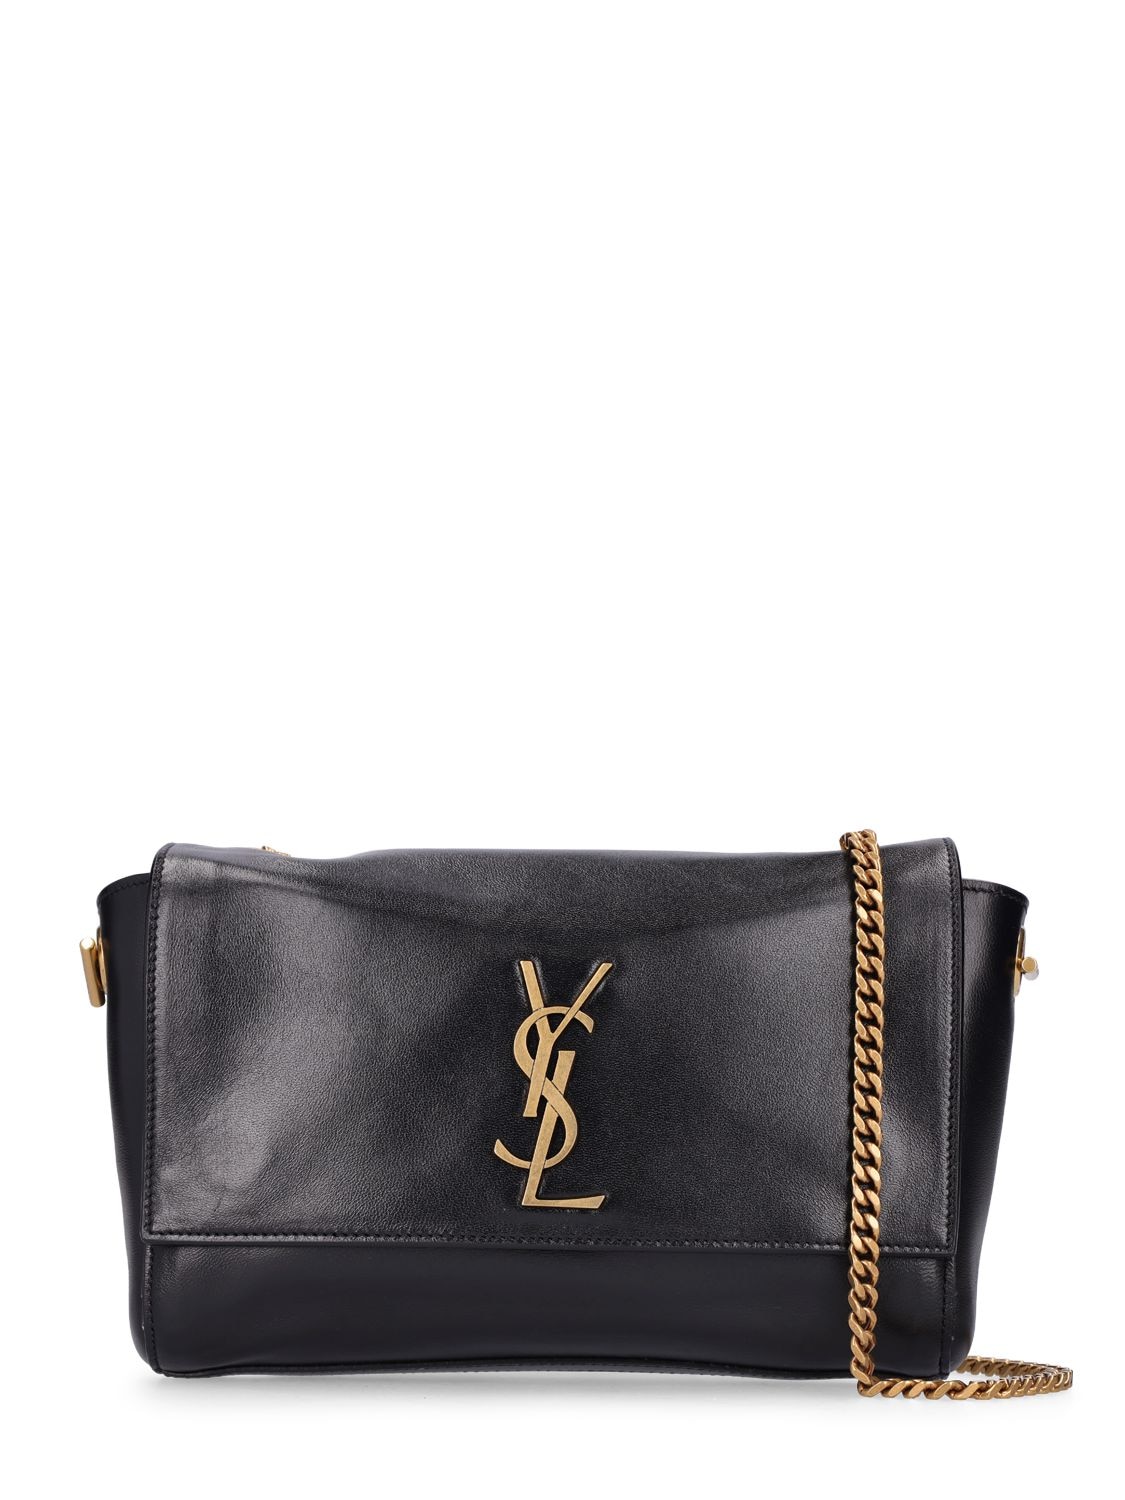 Saint Laurent Monogram Small Kate Bag - Black Crossbody Bags, Handbags -  SNT272739